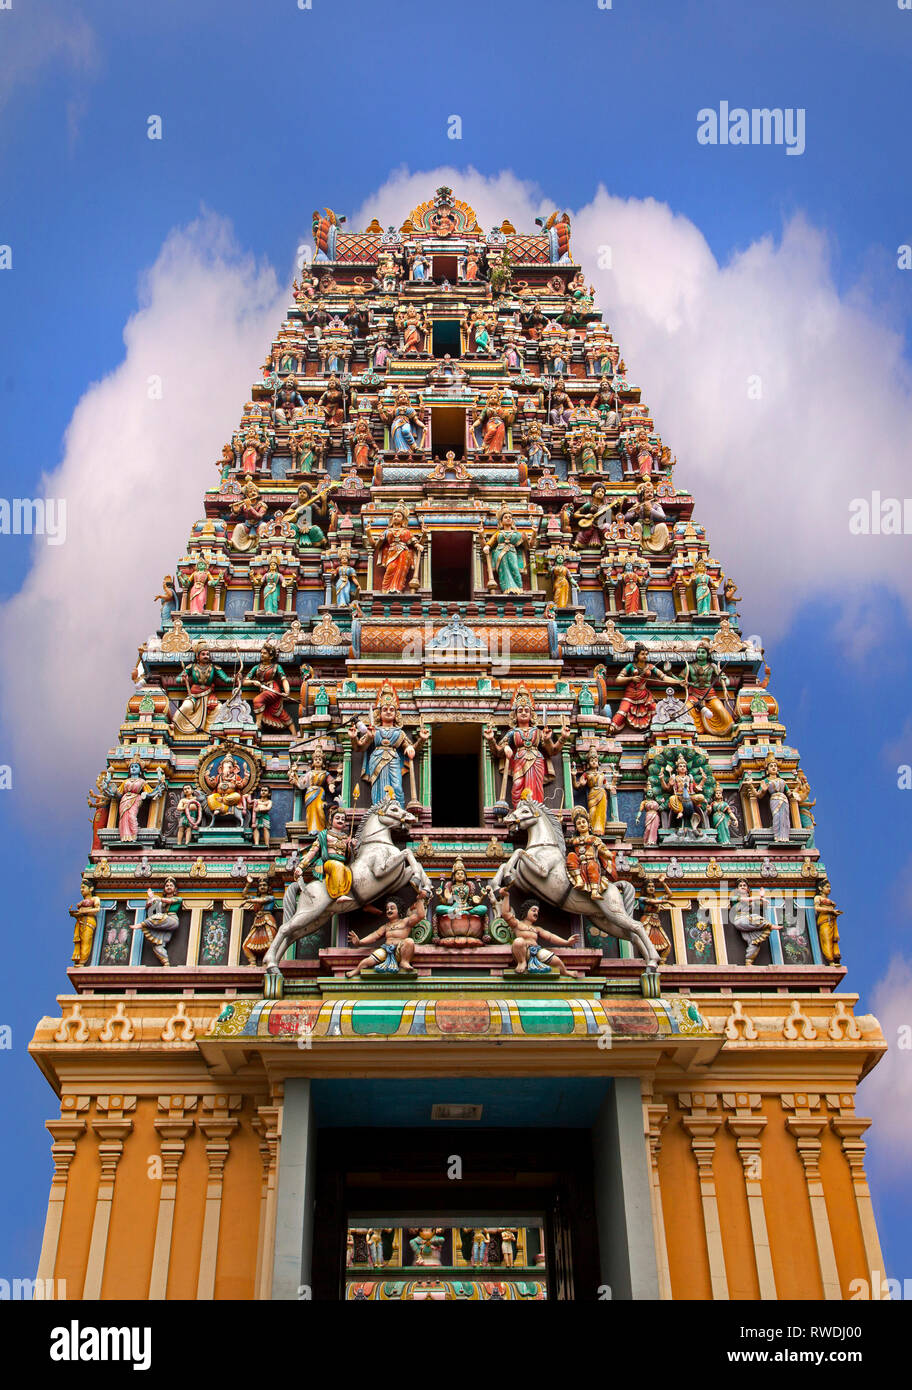 Il Tempio di Sri Mariamman Dhevasthanam, presentando gli ornati di 'raja Gopuram' torre in stile del Sud templi indiani. Kuala Lumpur in Malesia Foto Stock